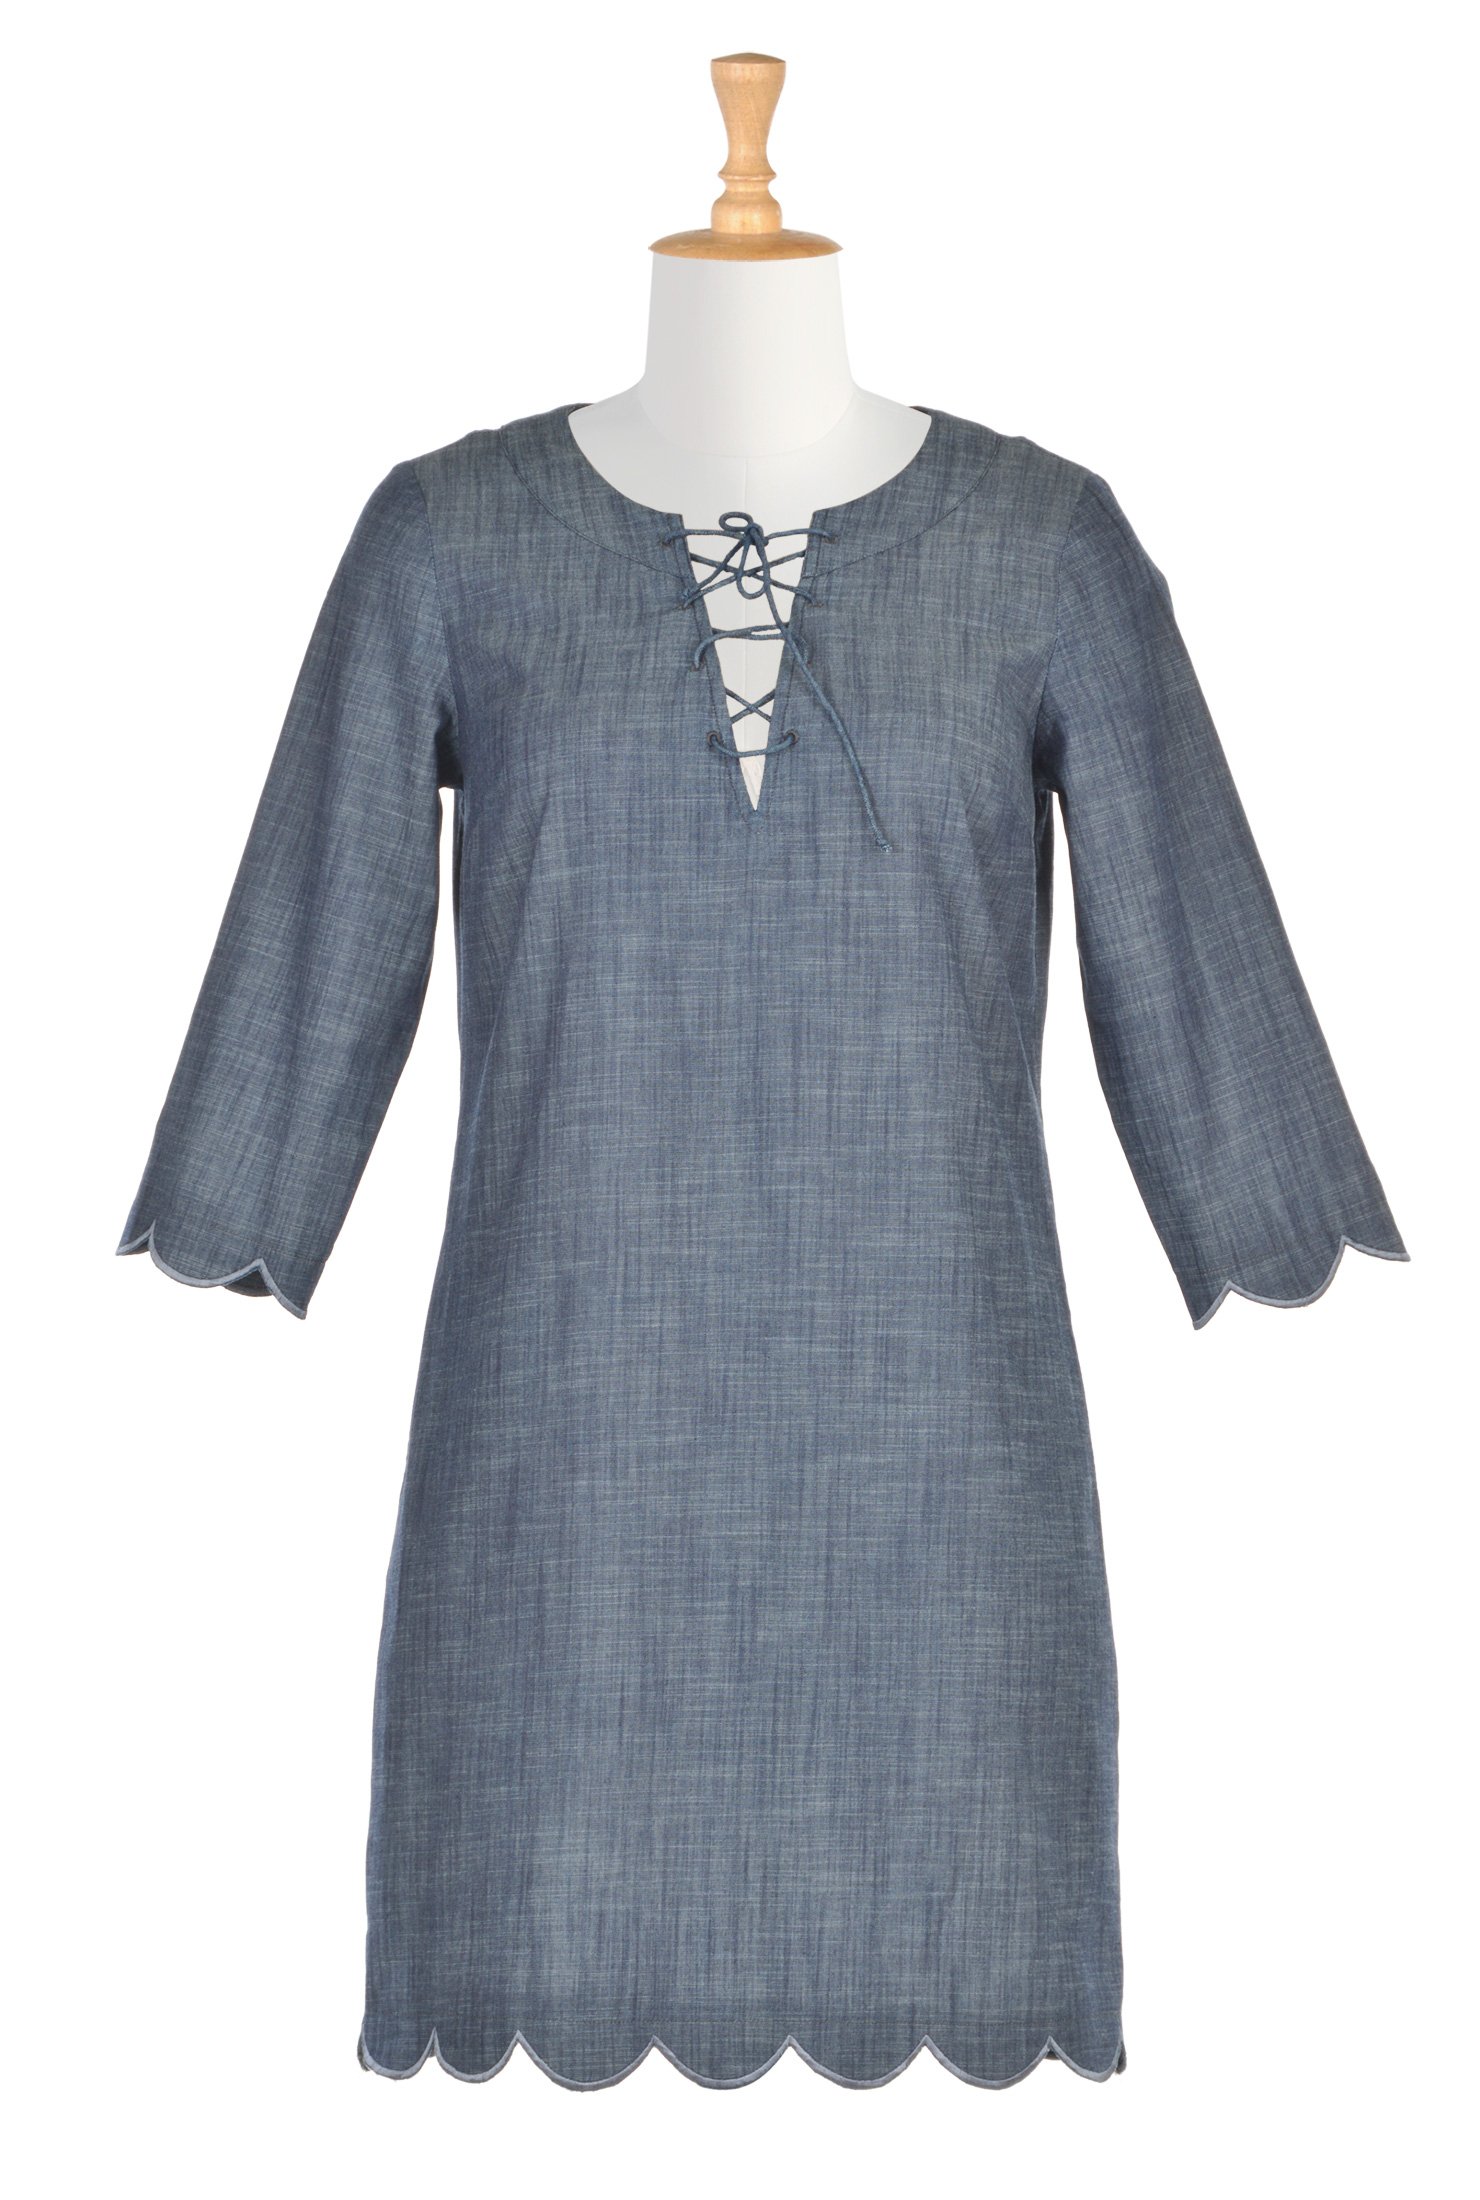 Shop Lace-up chambray shift dress | eShakti